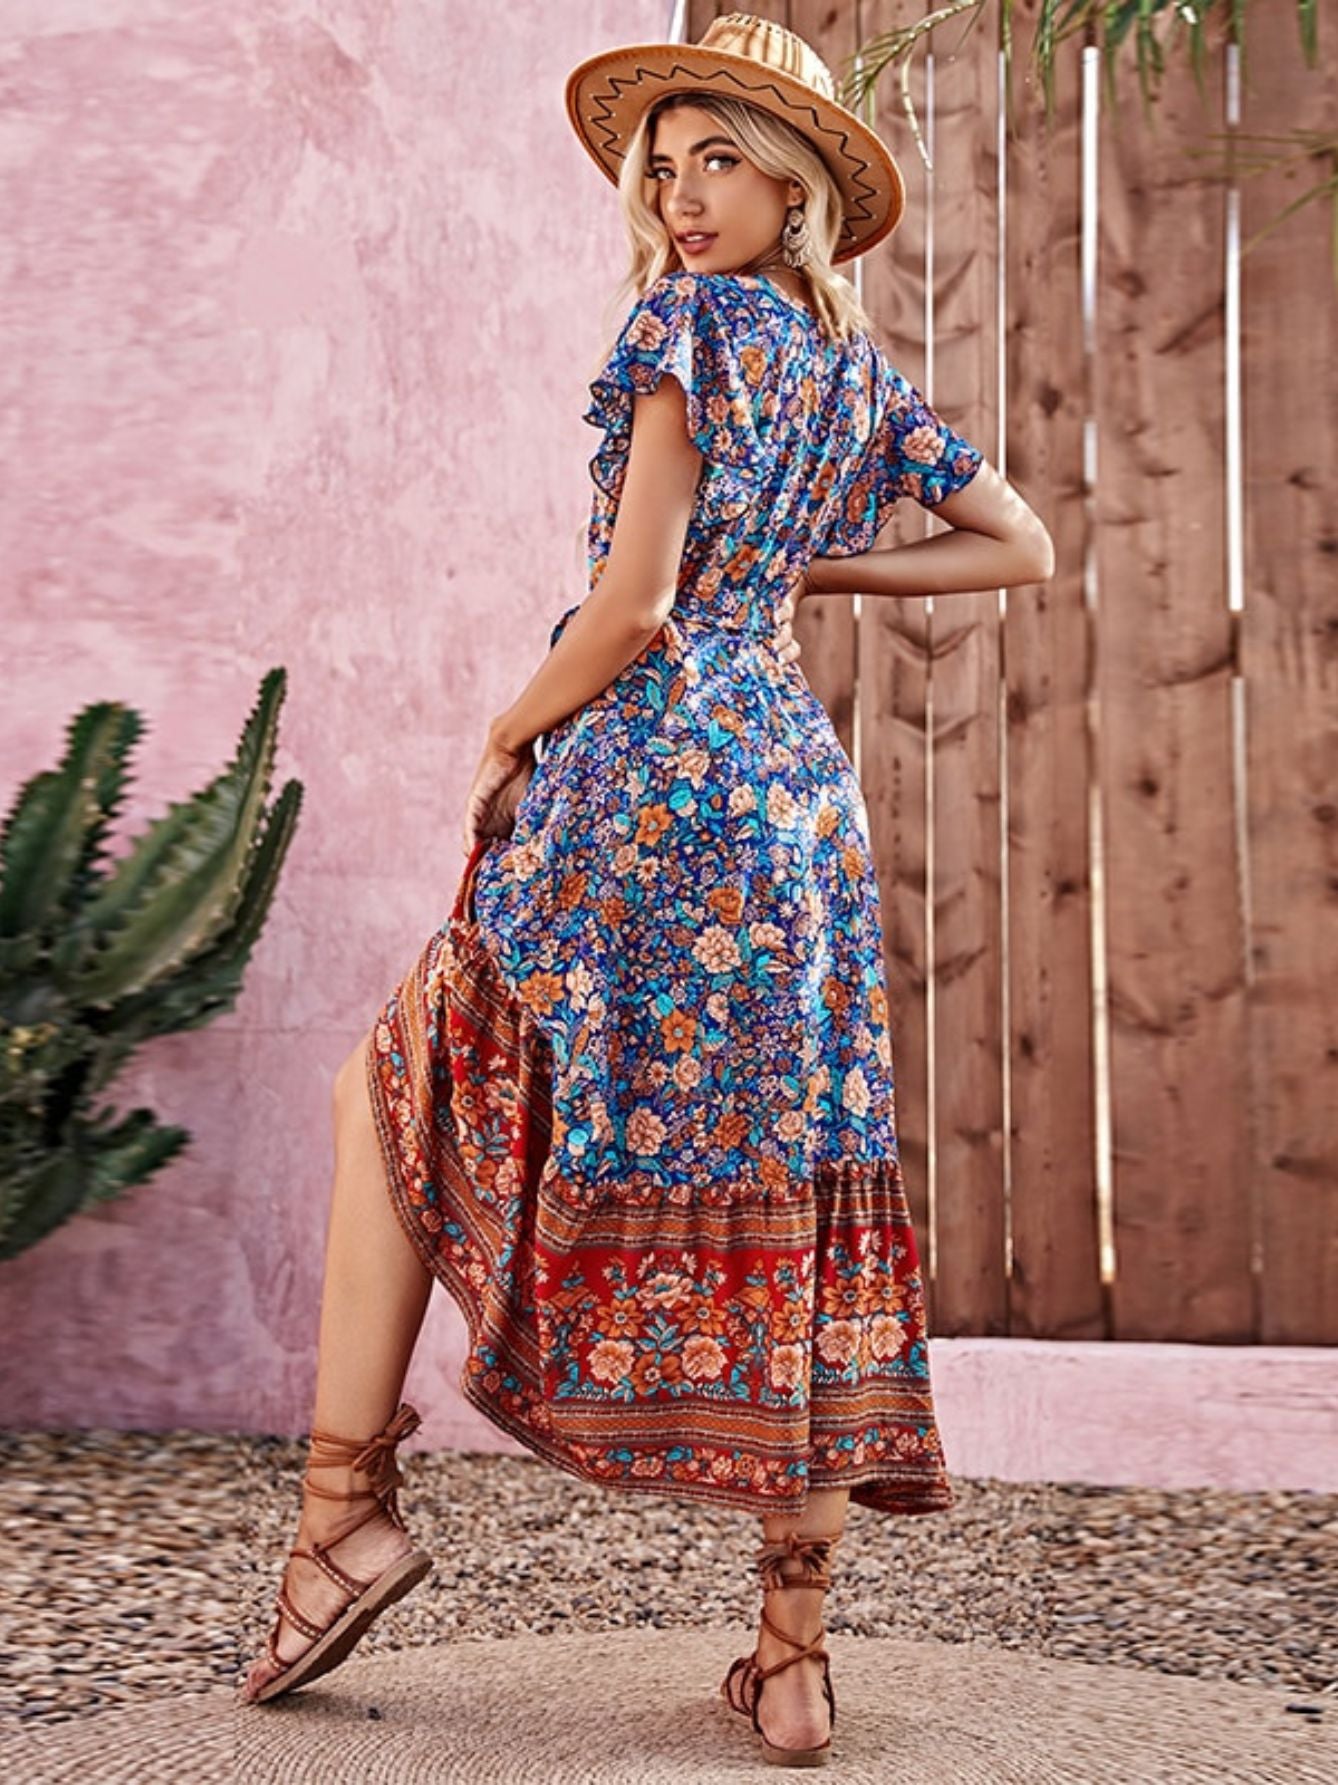 Robe de plage imprimée florale style bohème - Collection Summer Chic de la boutique petites aventures